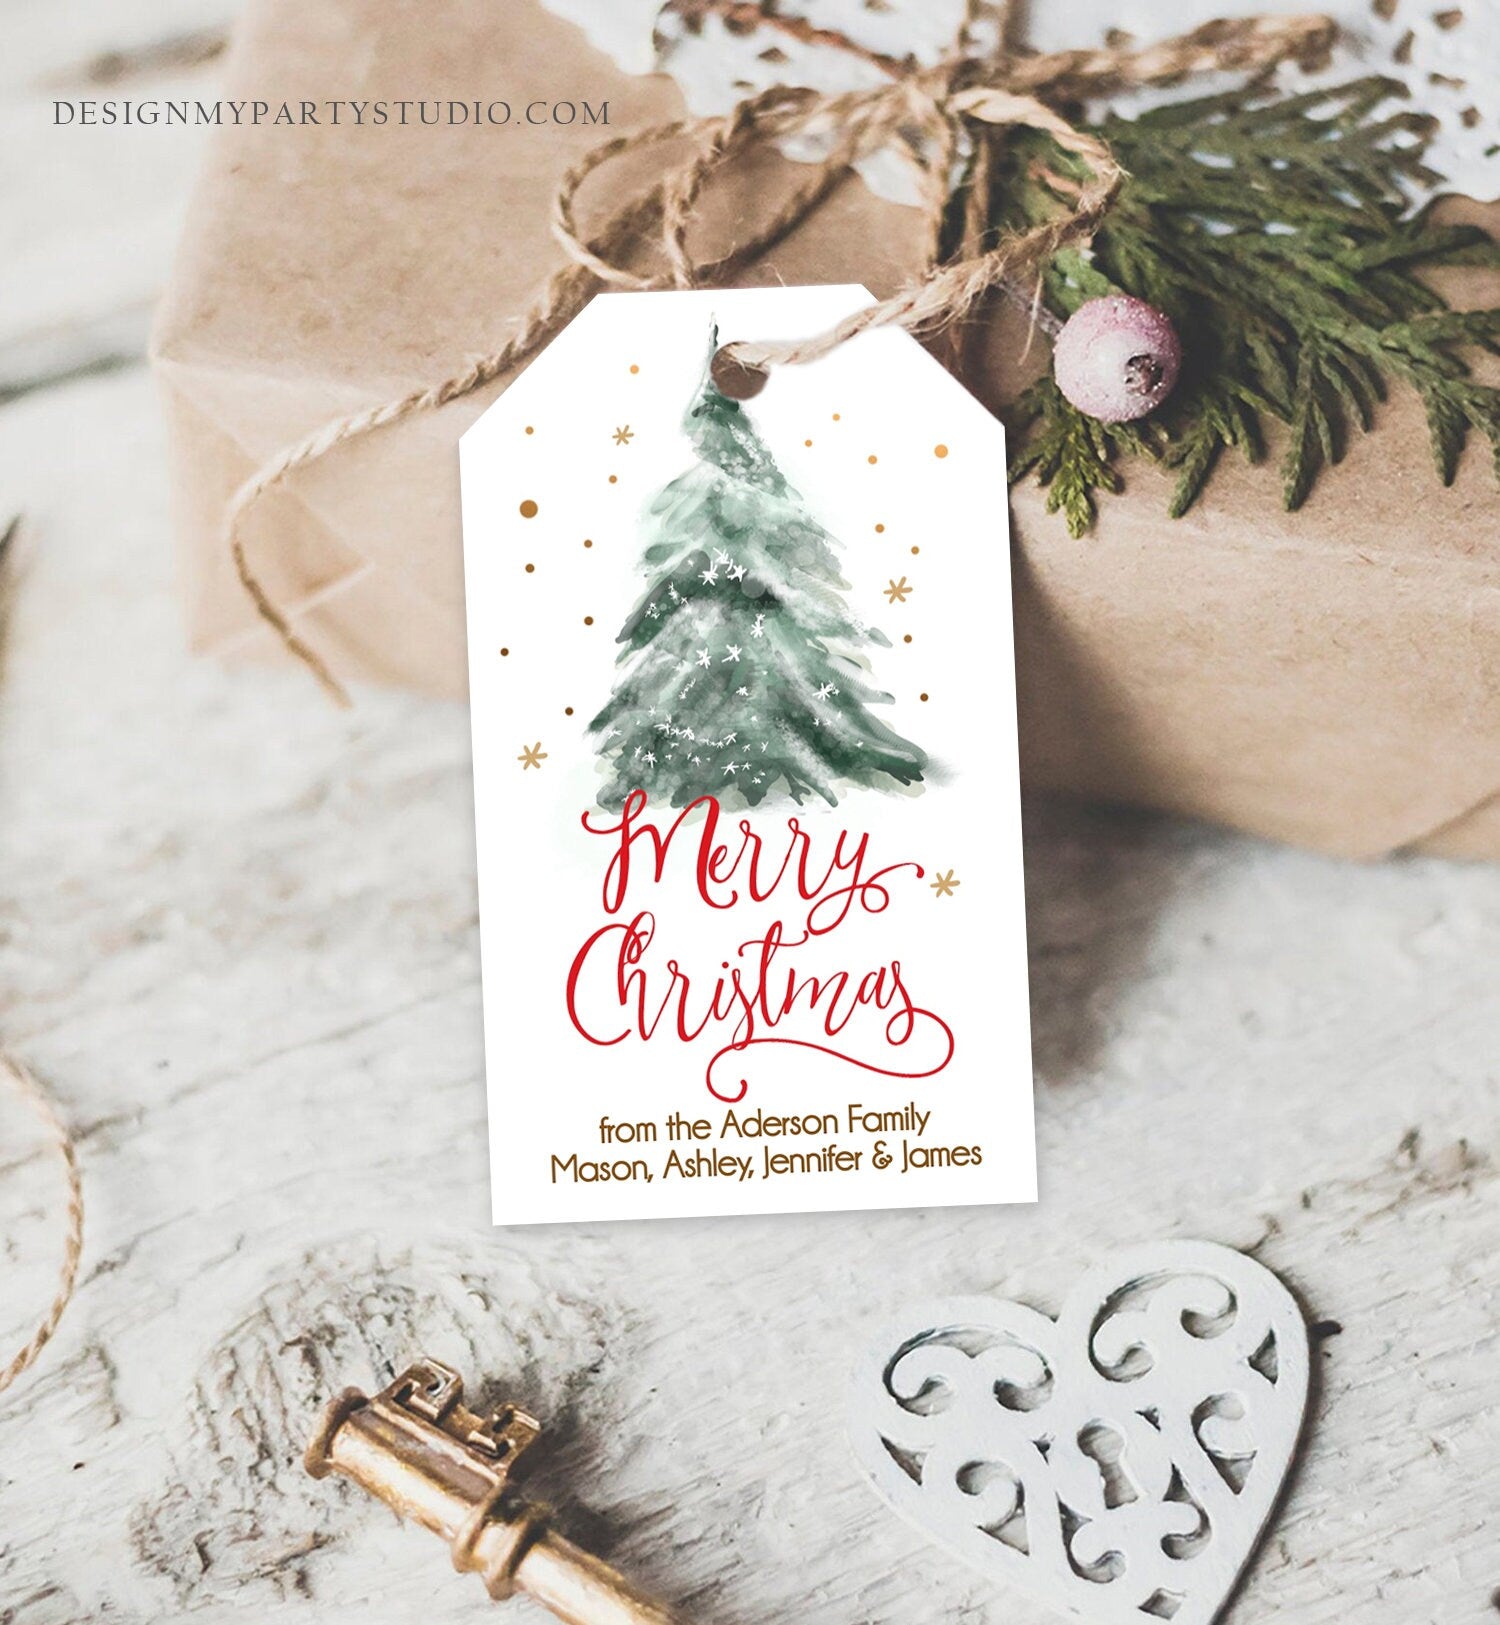 Editable Christmas Favor Tags Holiday Gift Tags Merry Christmas Holiday Tags Holiday Labels Tree Gold Download Printable Template Corjl 0363